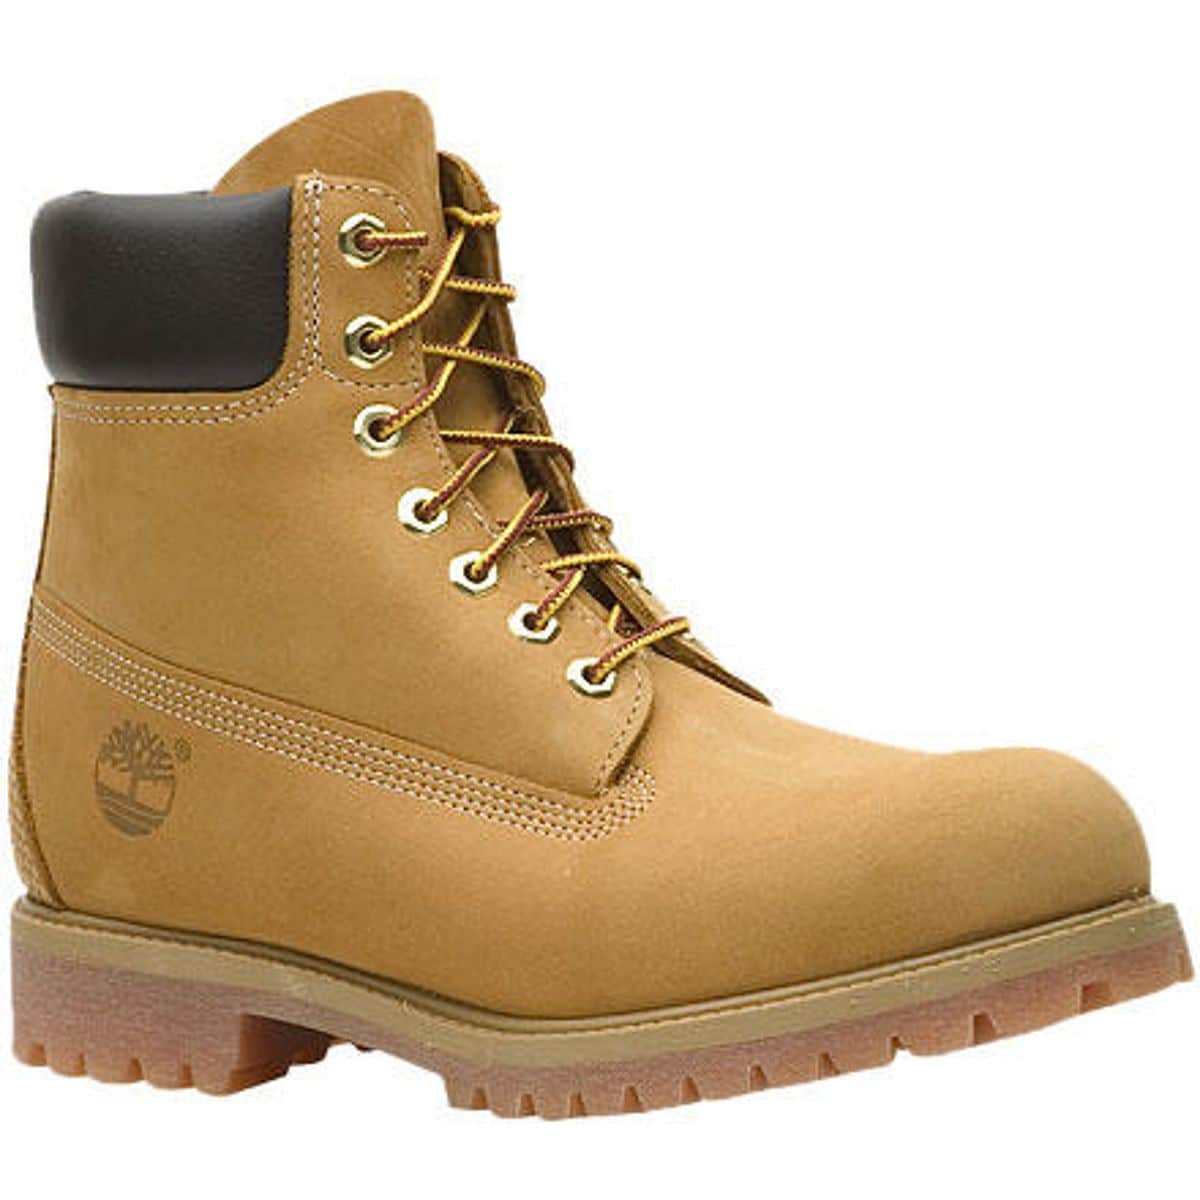 Timberland Premium Classic 6in Boot - Men's - Footwear